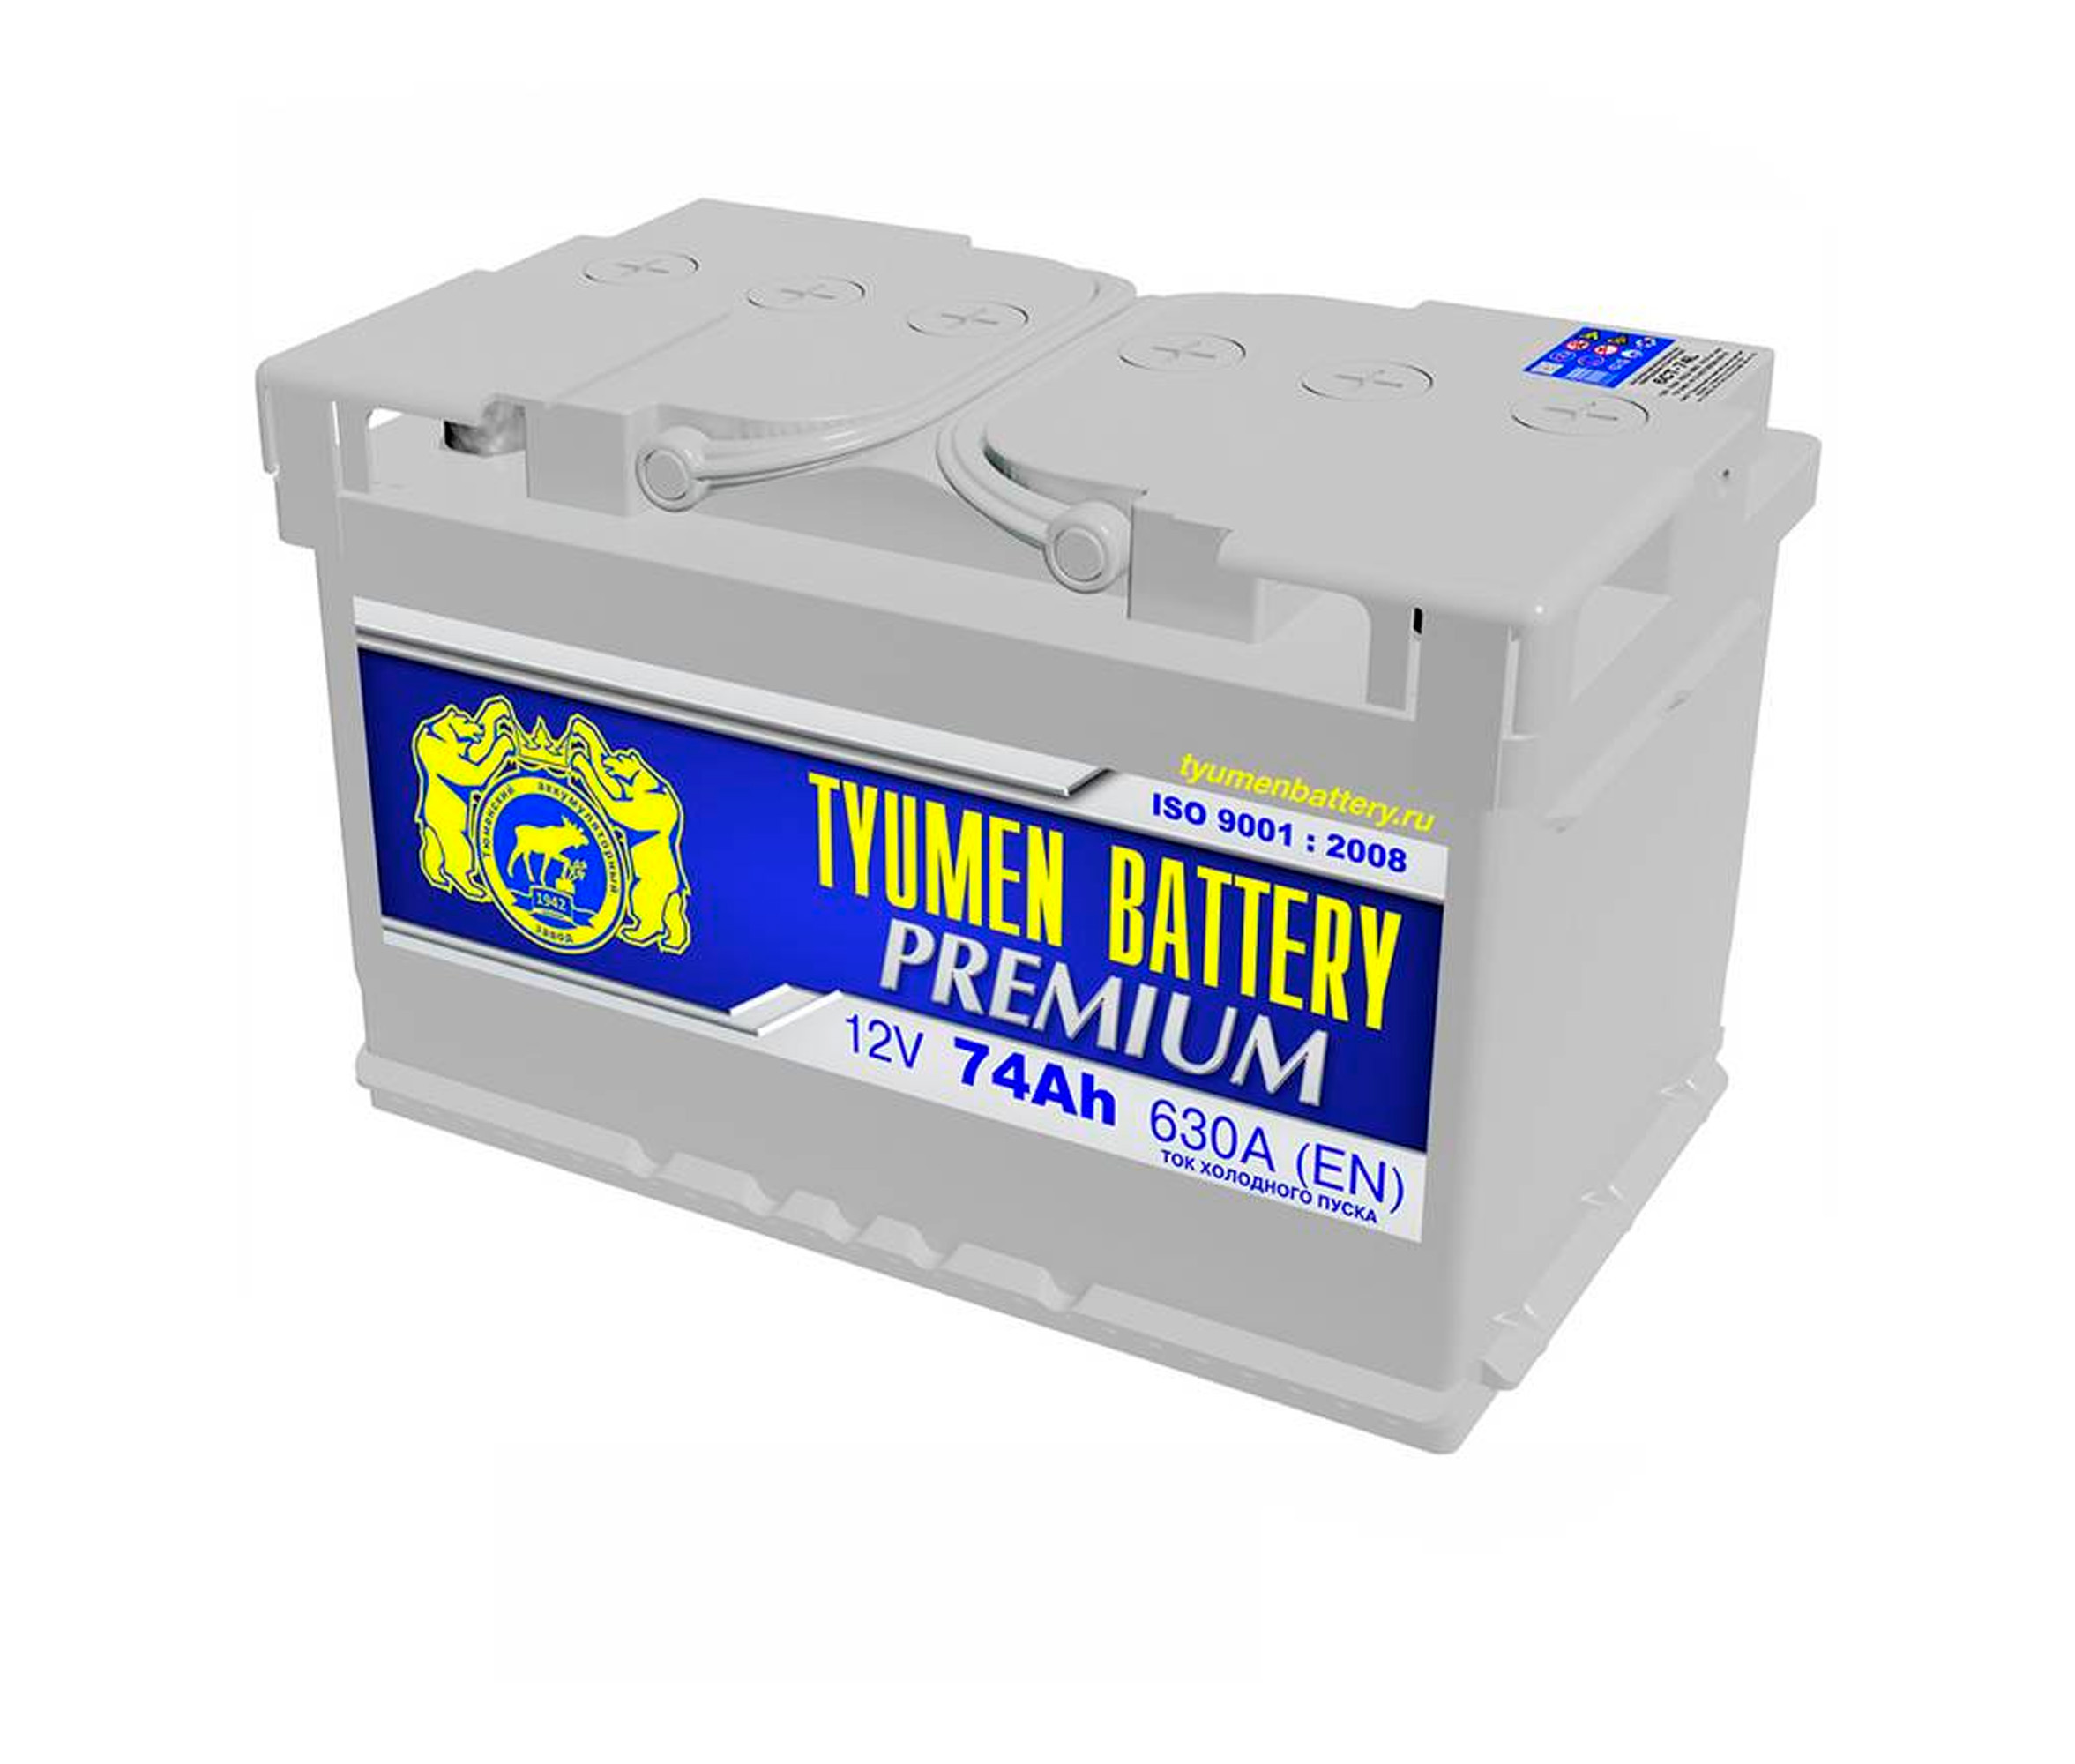 Автомобильные аккумуляторы спб цены. Аккумулятор 132 а/ч "Tyumen Battery" 960a (прямая полярность) (513*189*230). Аккумулятор Asia 95 а/ч "Tyumen Battery" 720a (Обратная полярность) (302*172*223). Аккумулятор Asia 60 а/ч о.п. Тюмень. АКБ 6ст- 70 "Тюмень" АПЗ (630а) о/п 278*175*190 LR.